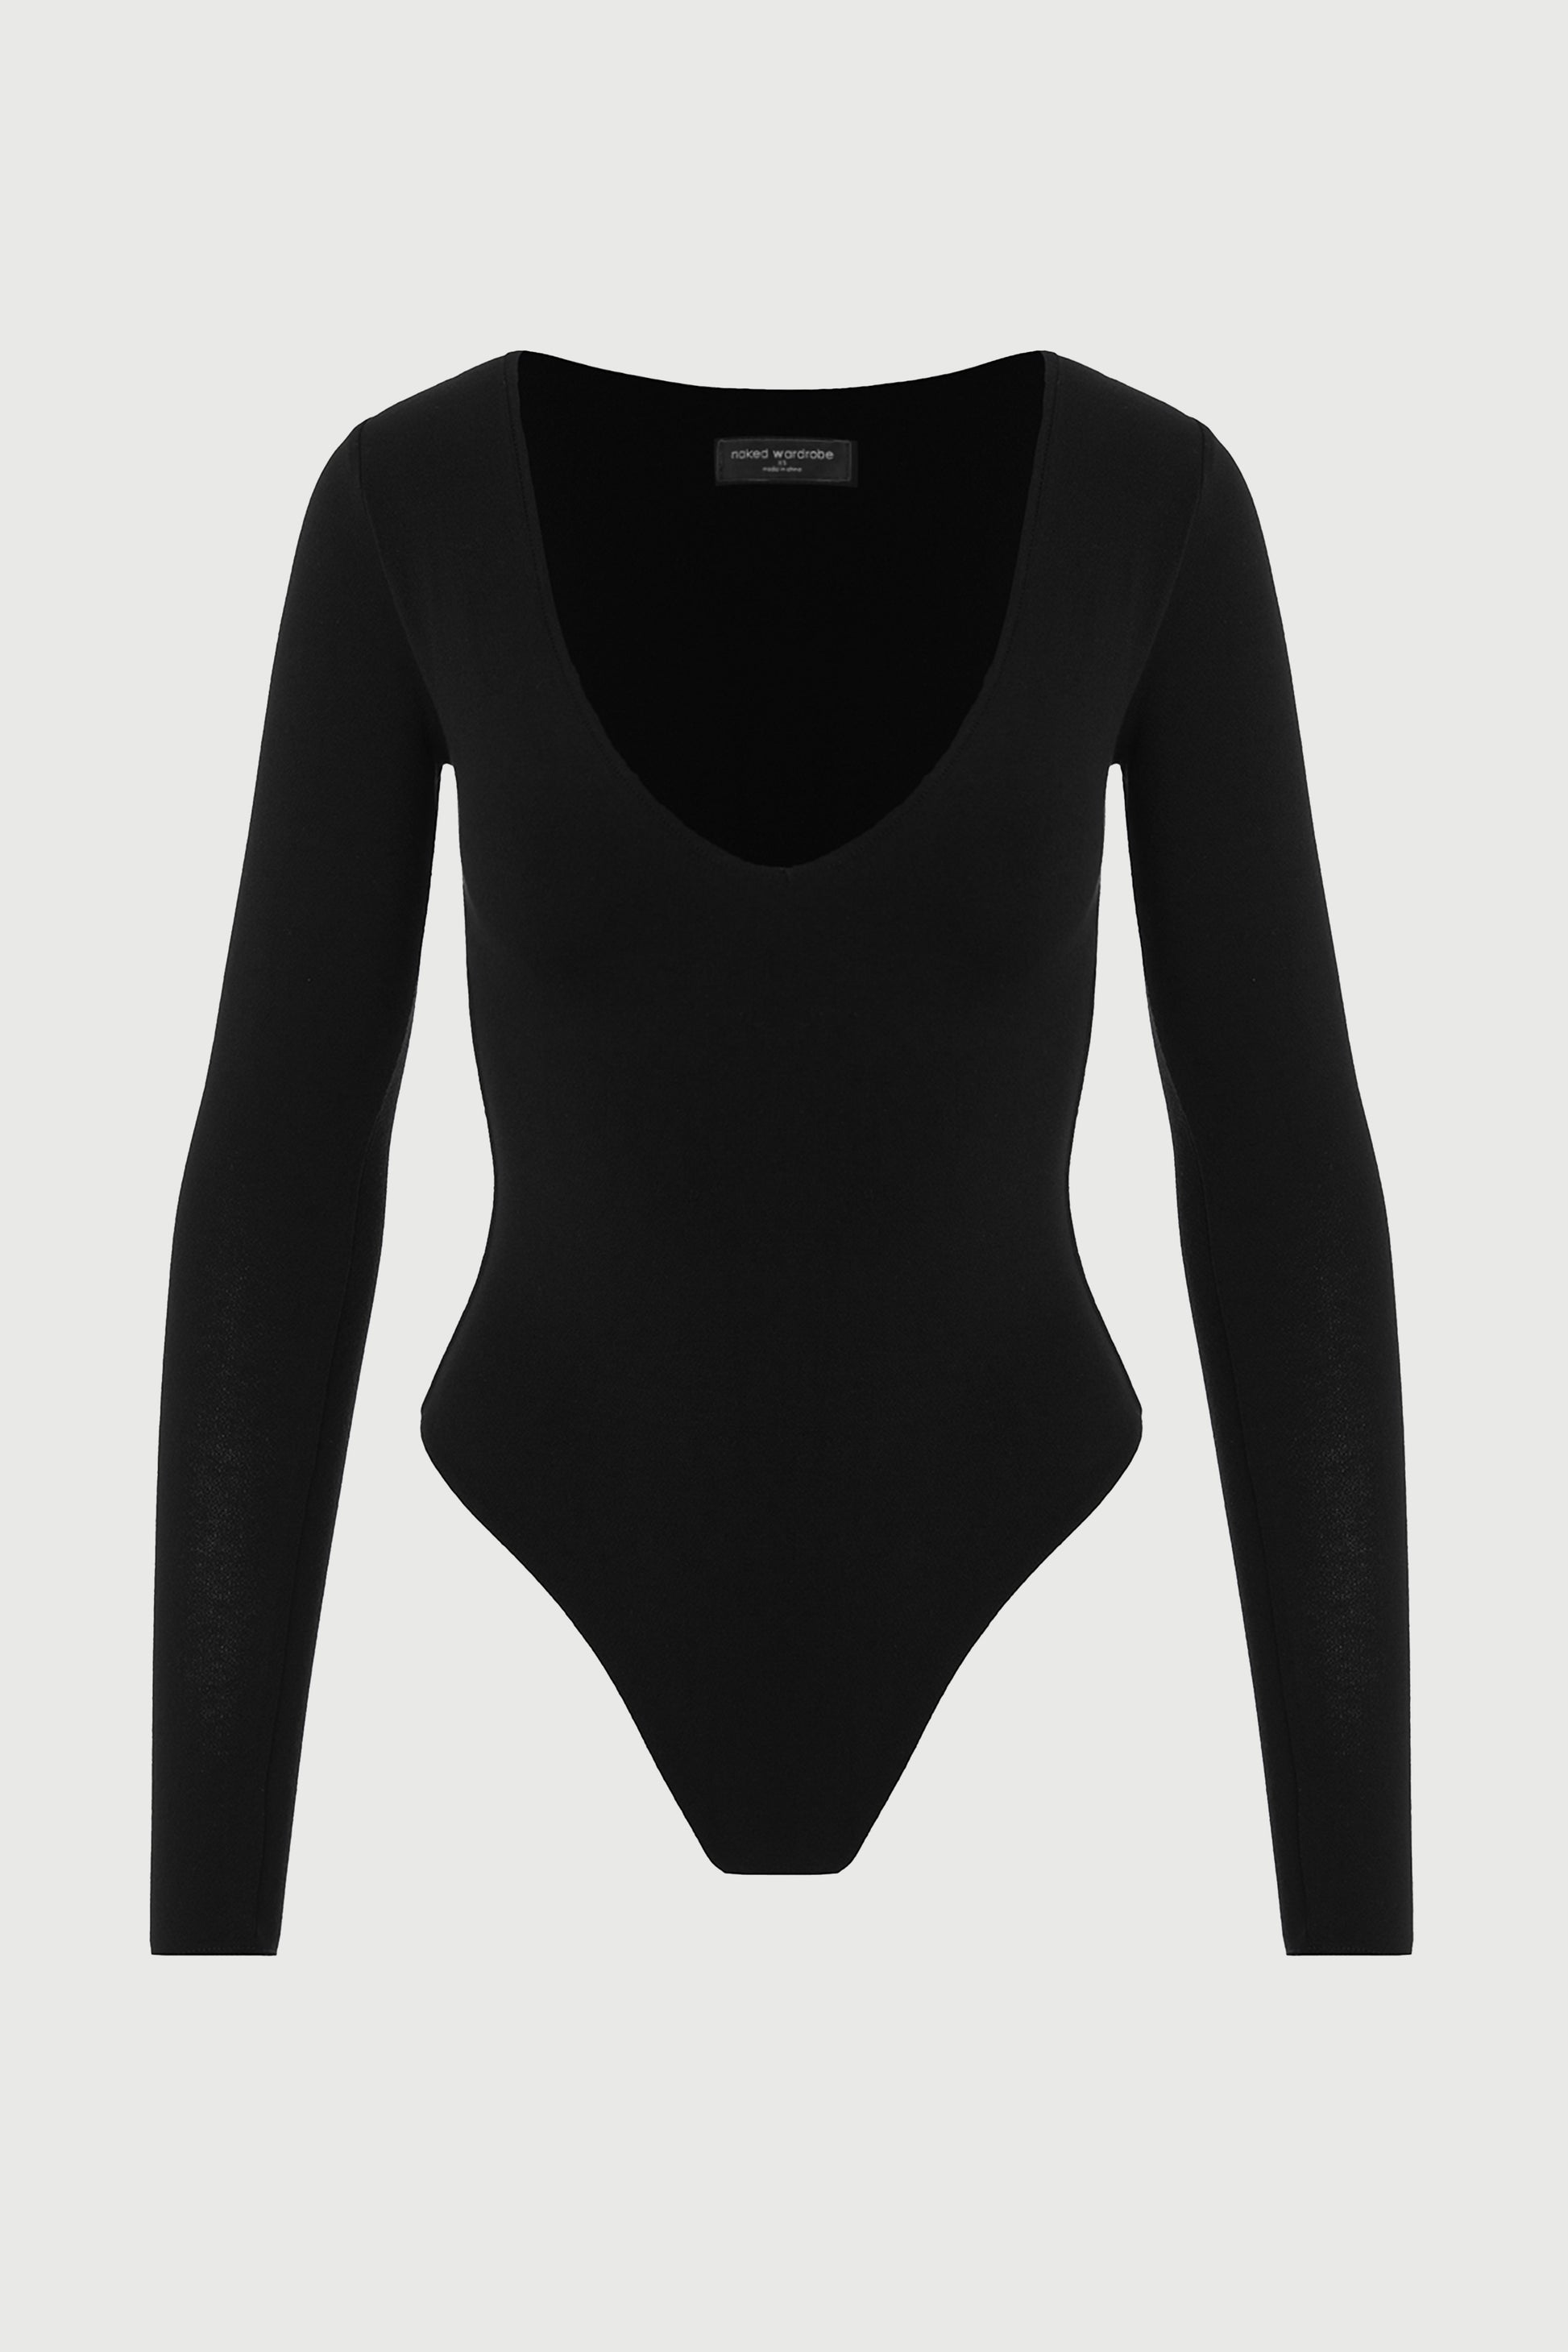 NW V-Neck Bodysuit – Naked Wardrobe